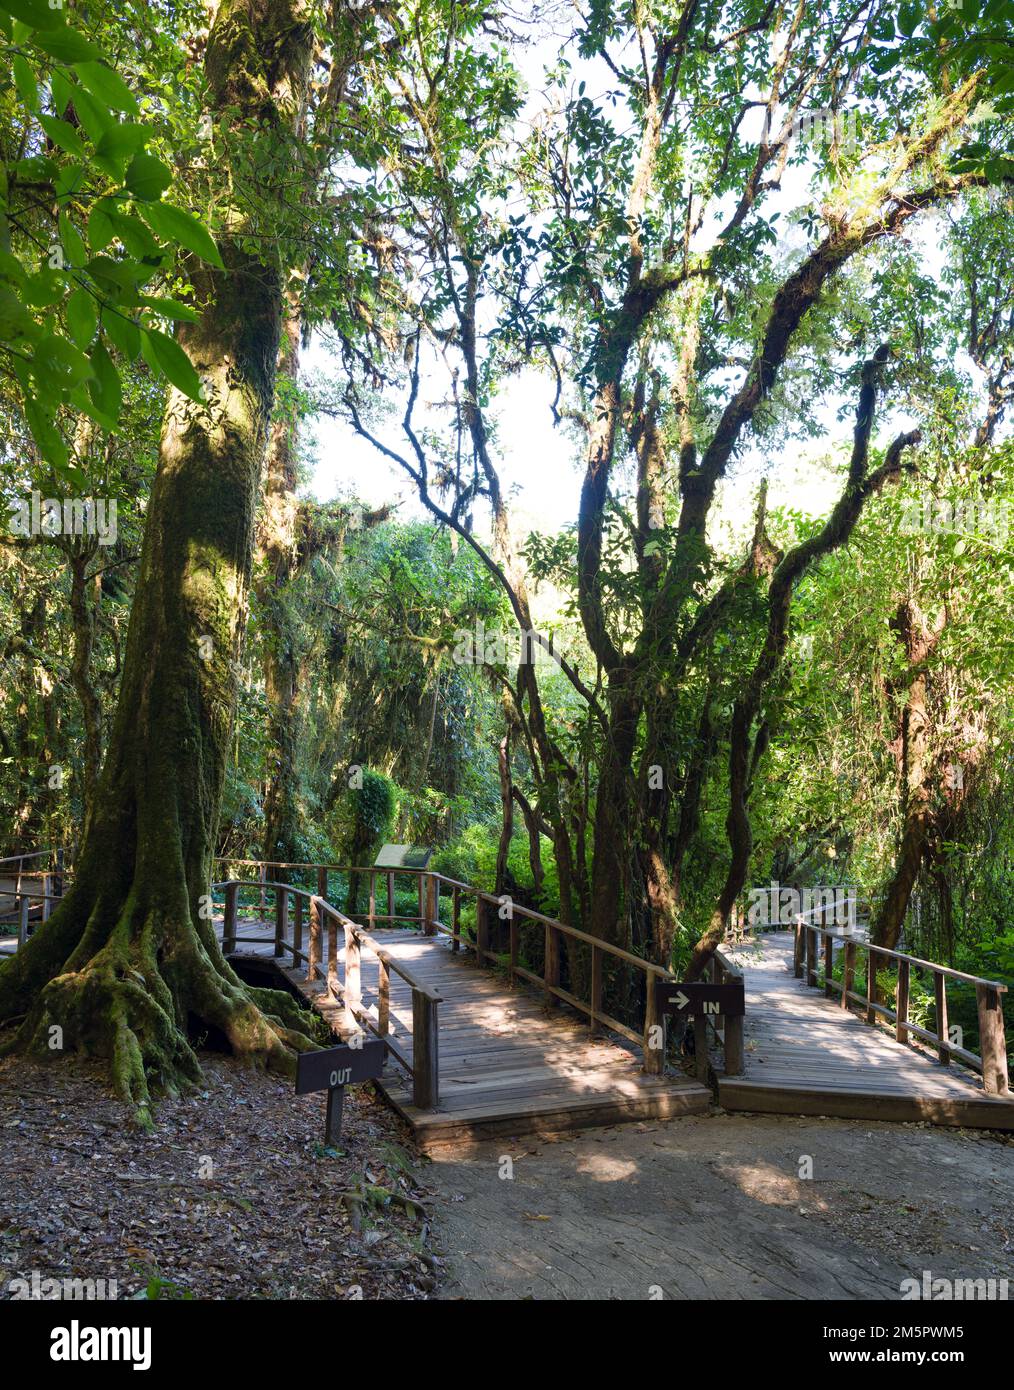 Vecchio albero nella foresta nuvola. Ponte di legno con muschio verde pianta e albero alla luce del sole nella foresta pluviale. Doi Inthanon parco nazionale. Chiang mai, Thailandia Foto Stock